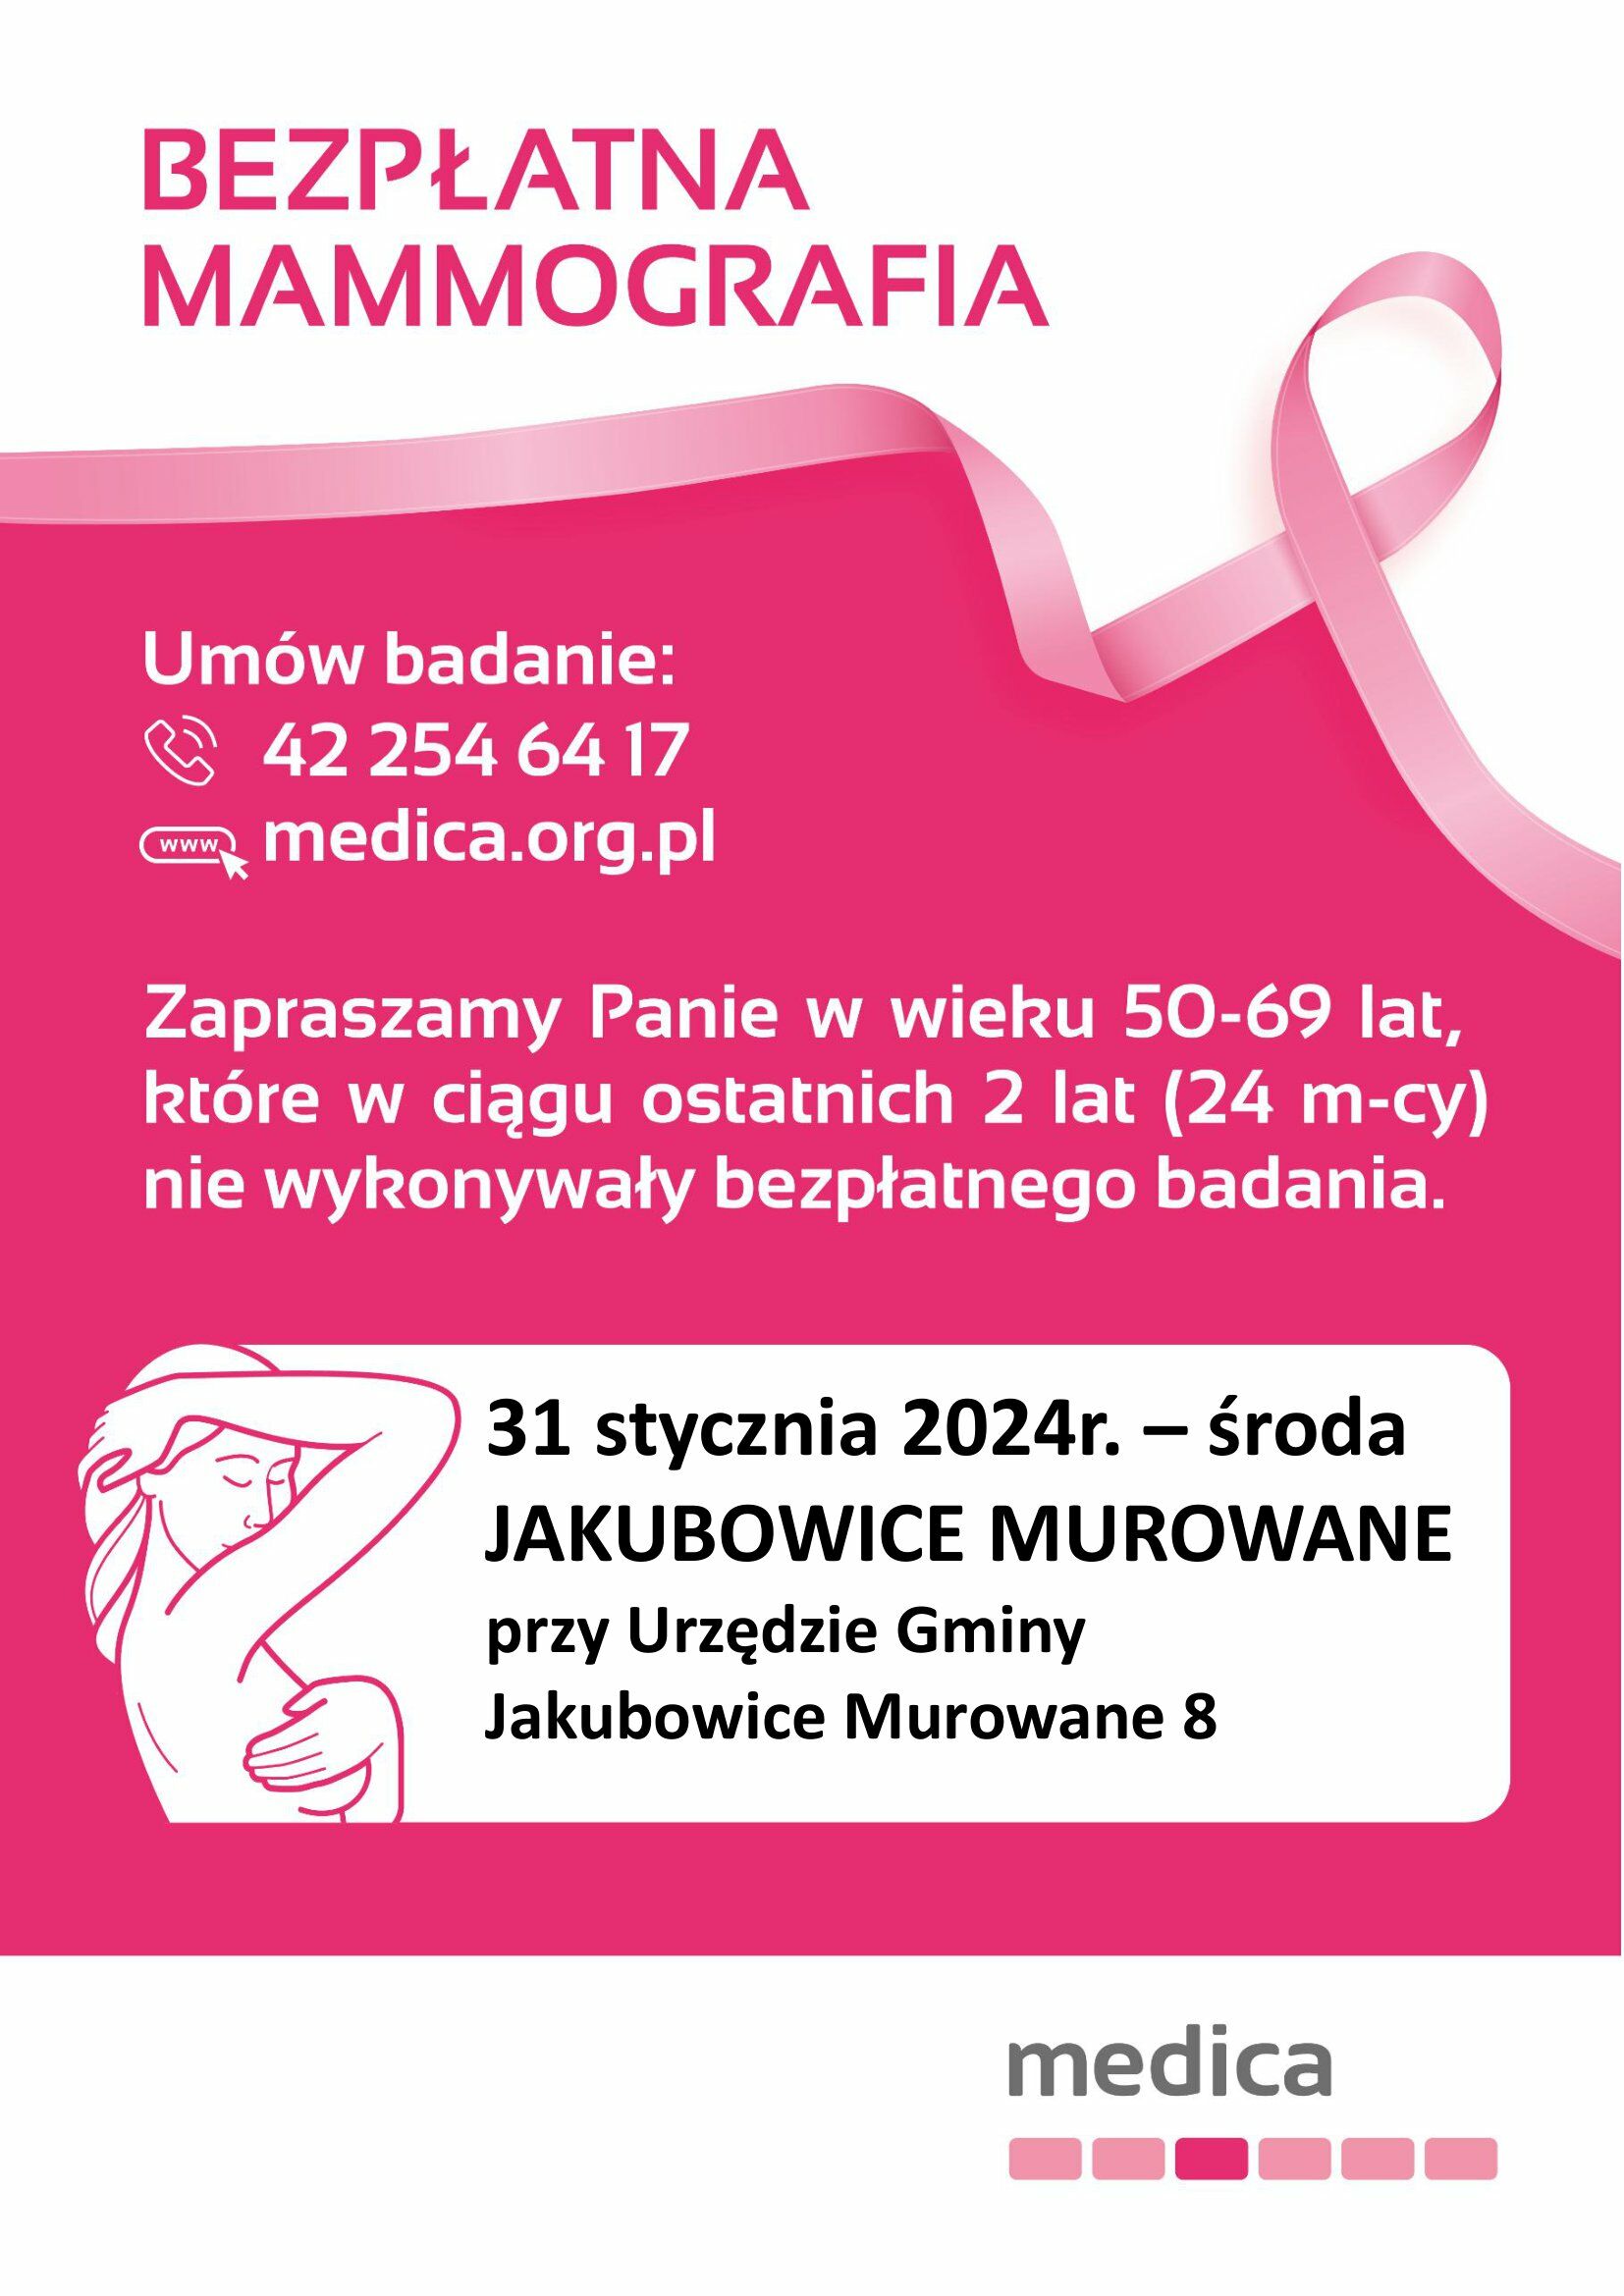 Plakat promujący darmową mammografię z różową wstążką symbolizującą walkę z rakiem piersi, informacjami kontaktowymi oraz datami badań, na różowym tle.